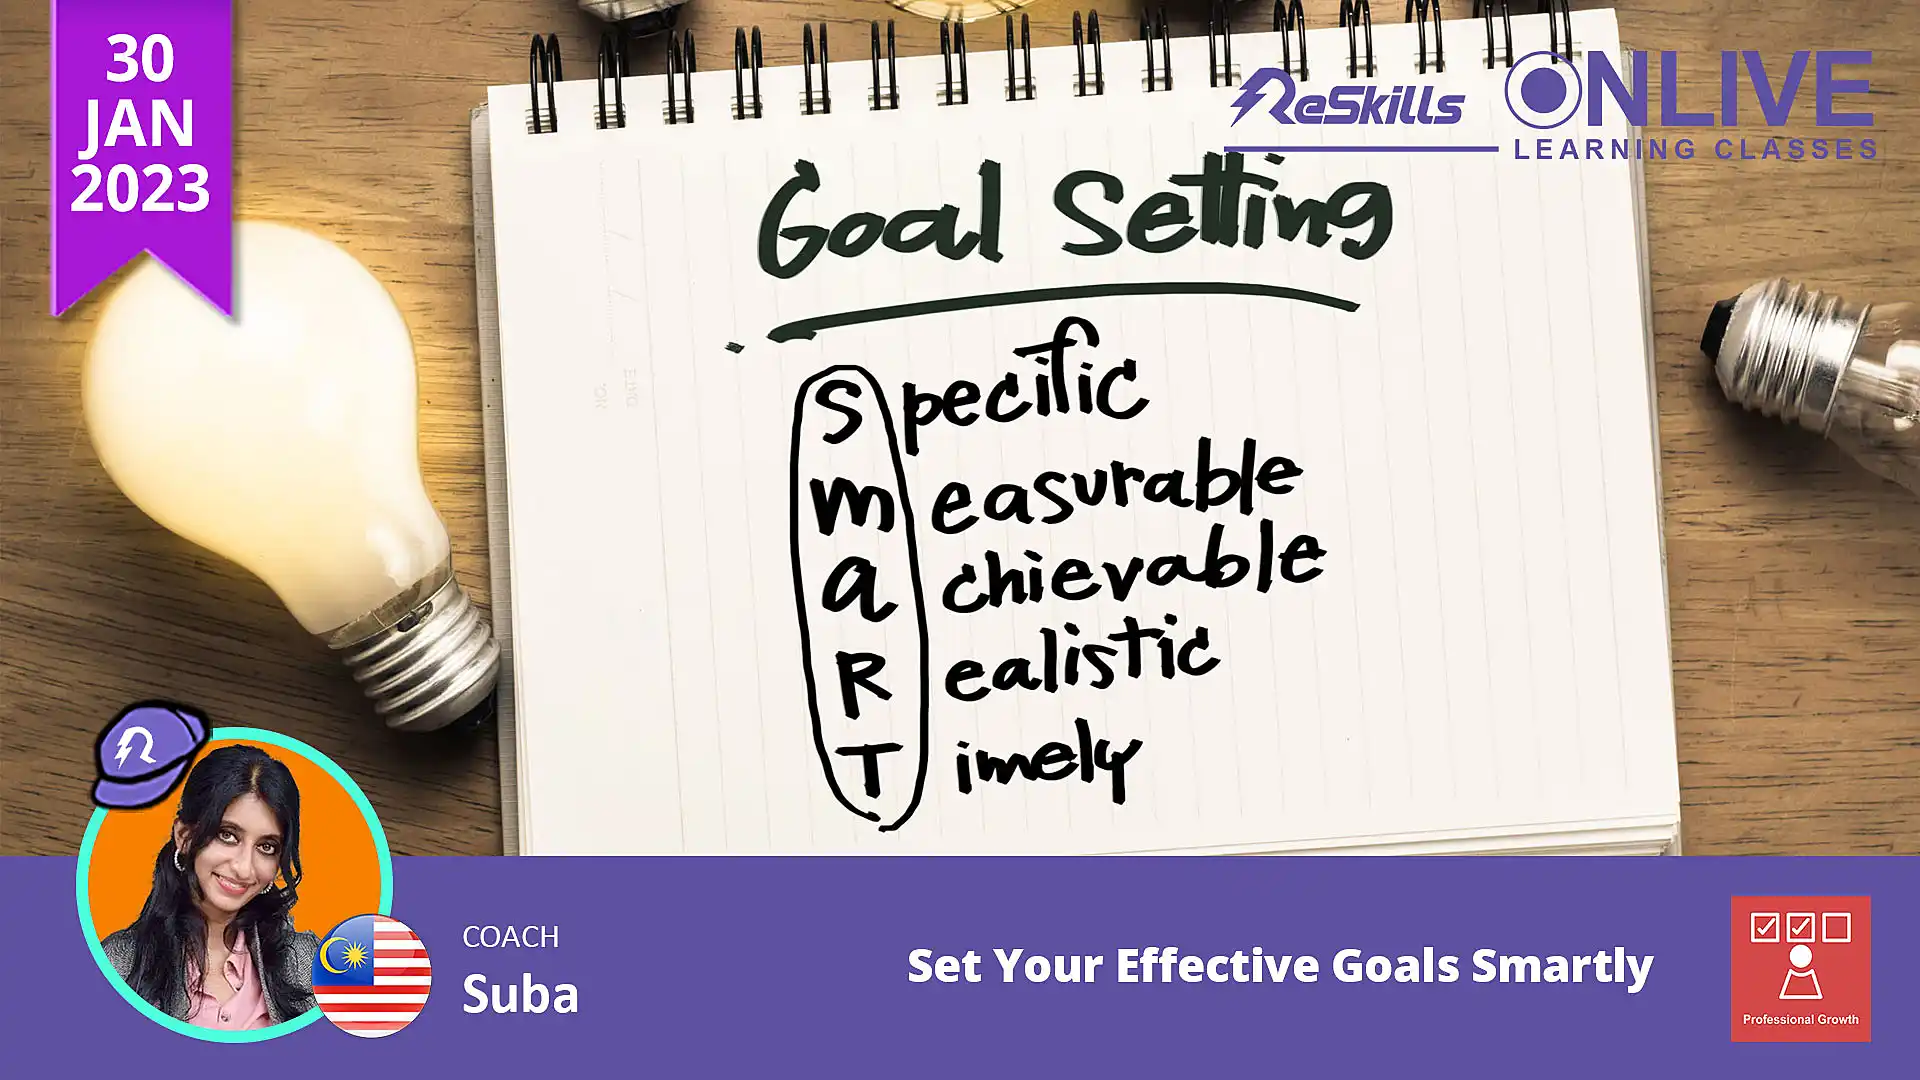 Set Your Effective Goals Smartly - ReSkills